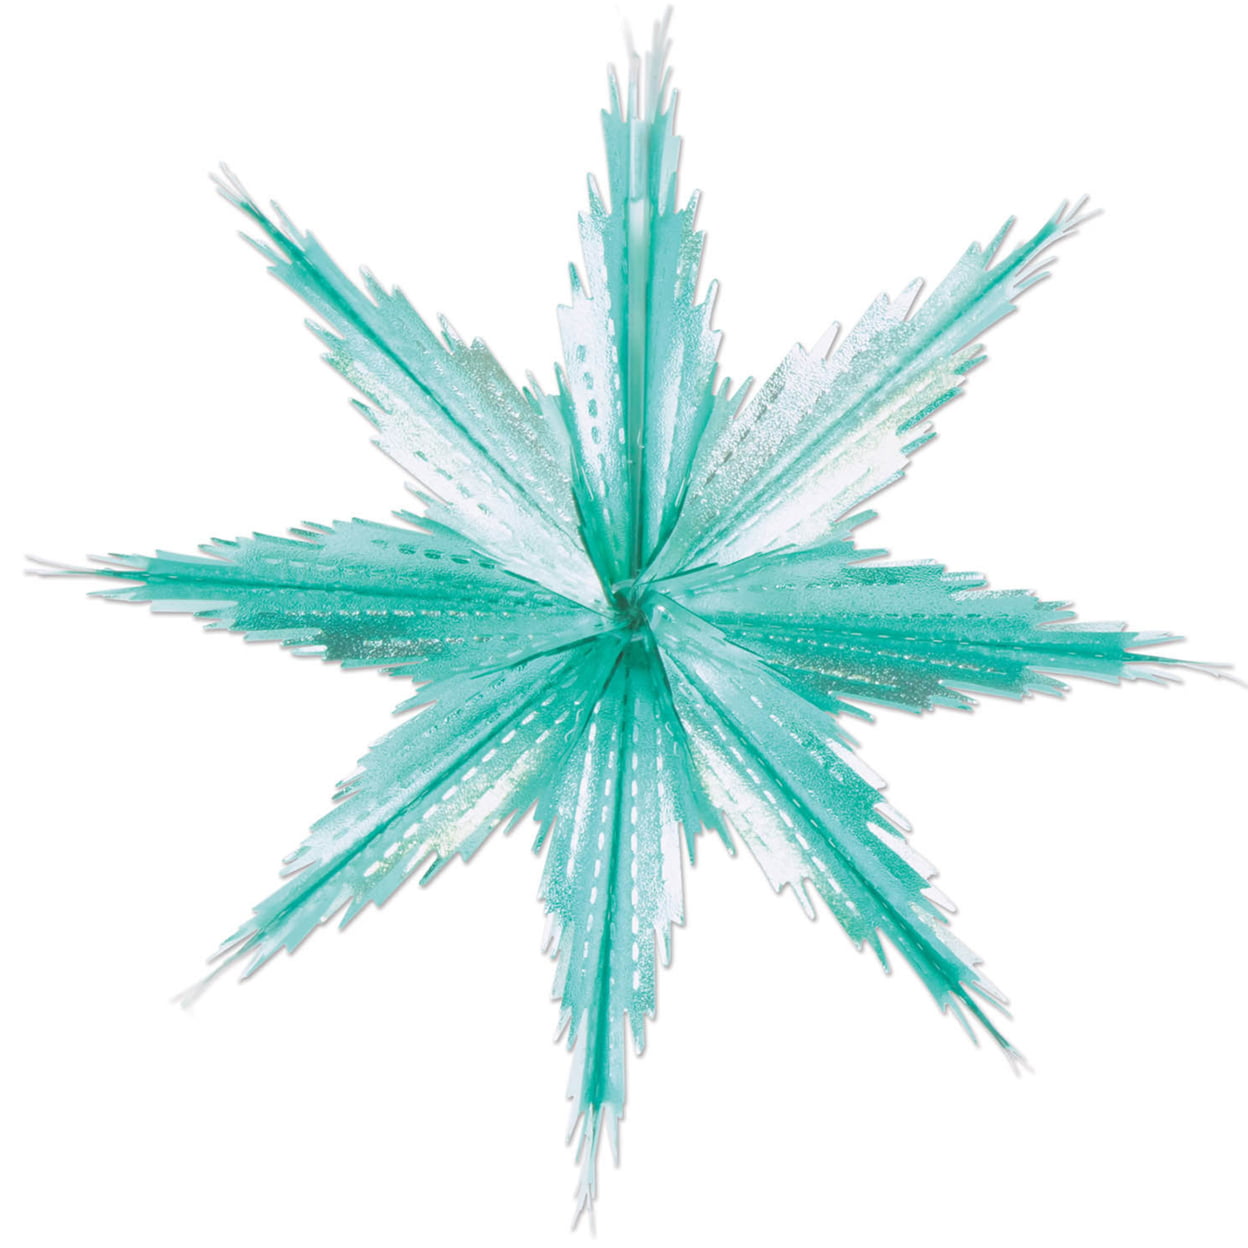 2-tone Metallic Snowflakes - Turquoise & Silver Case Of 12